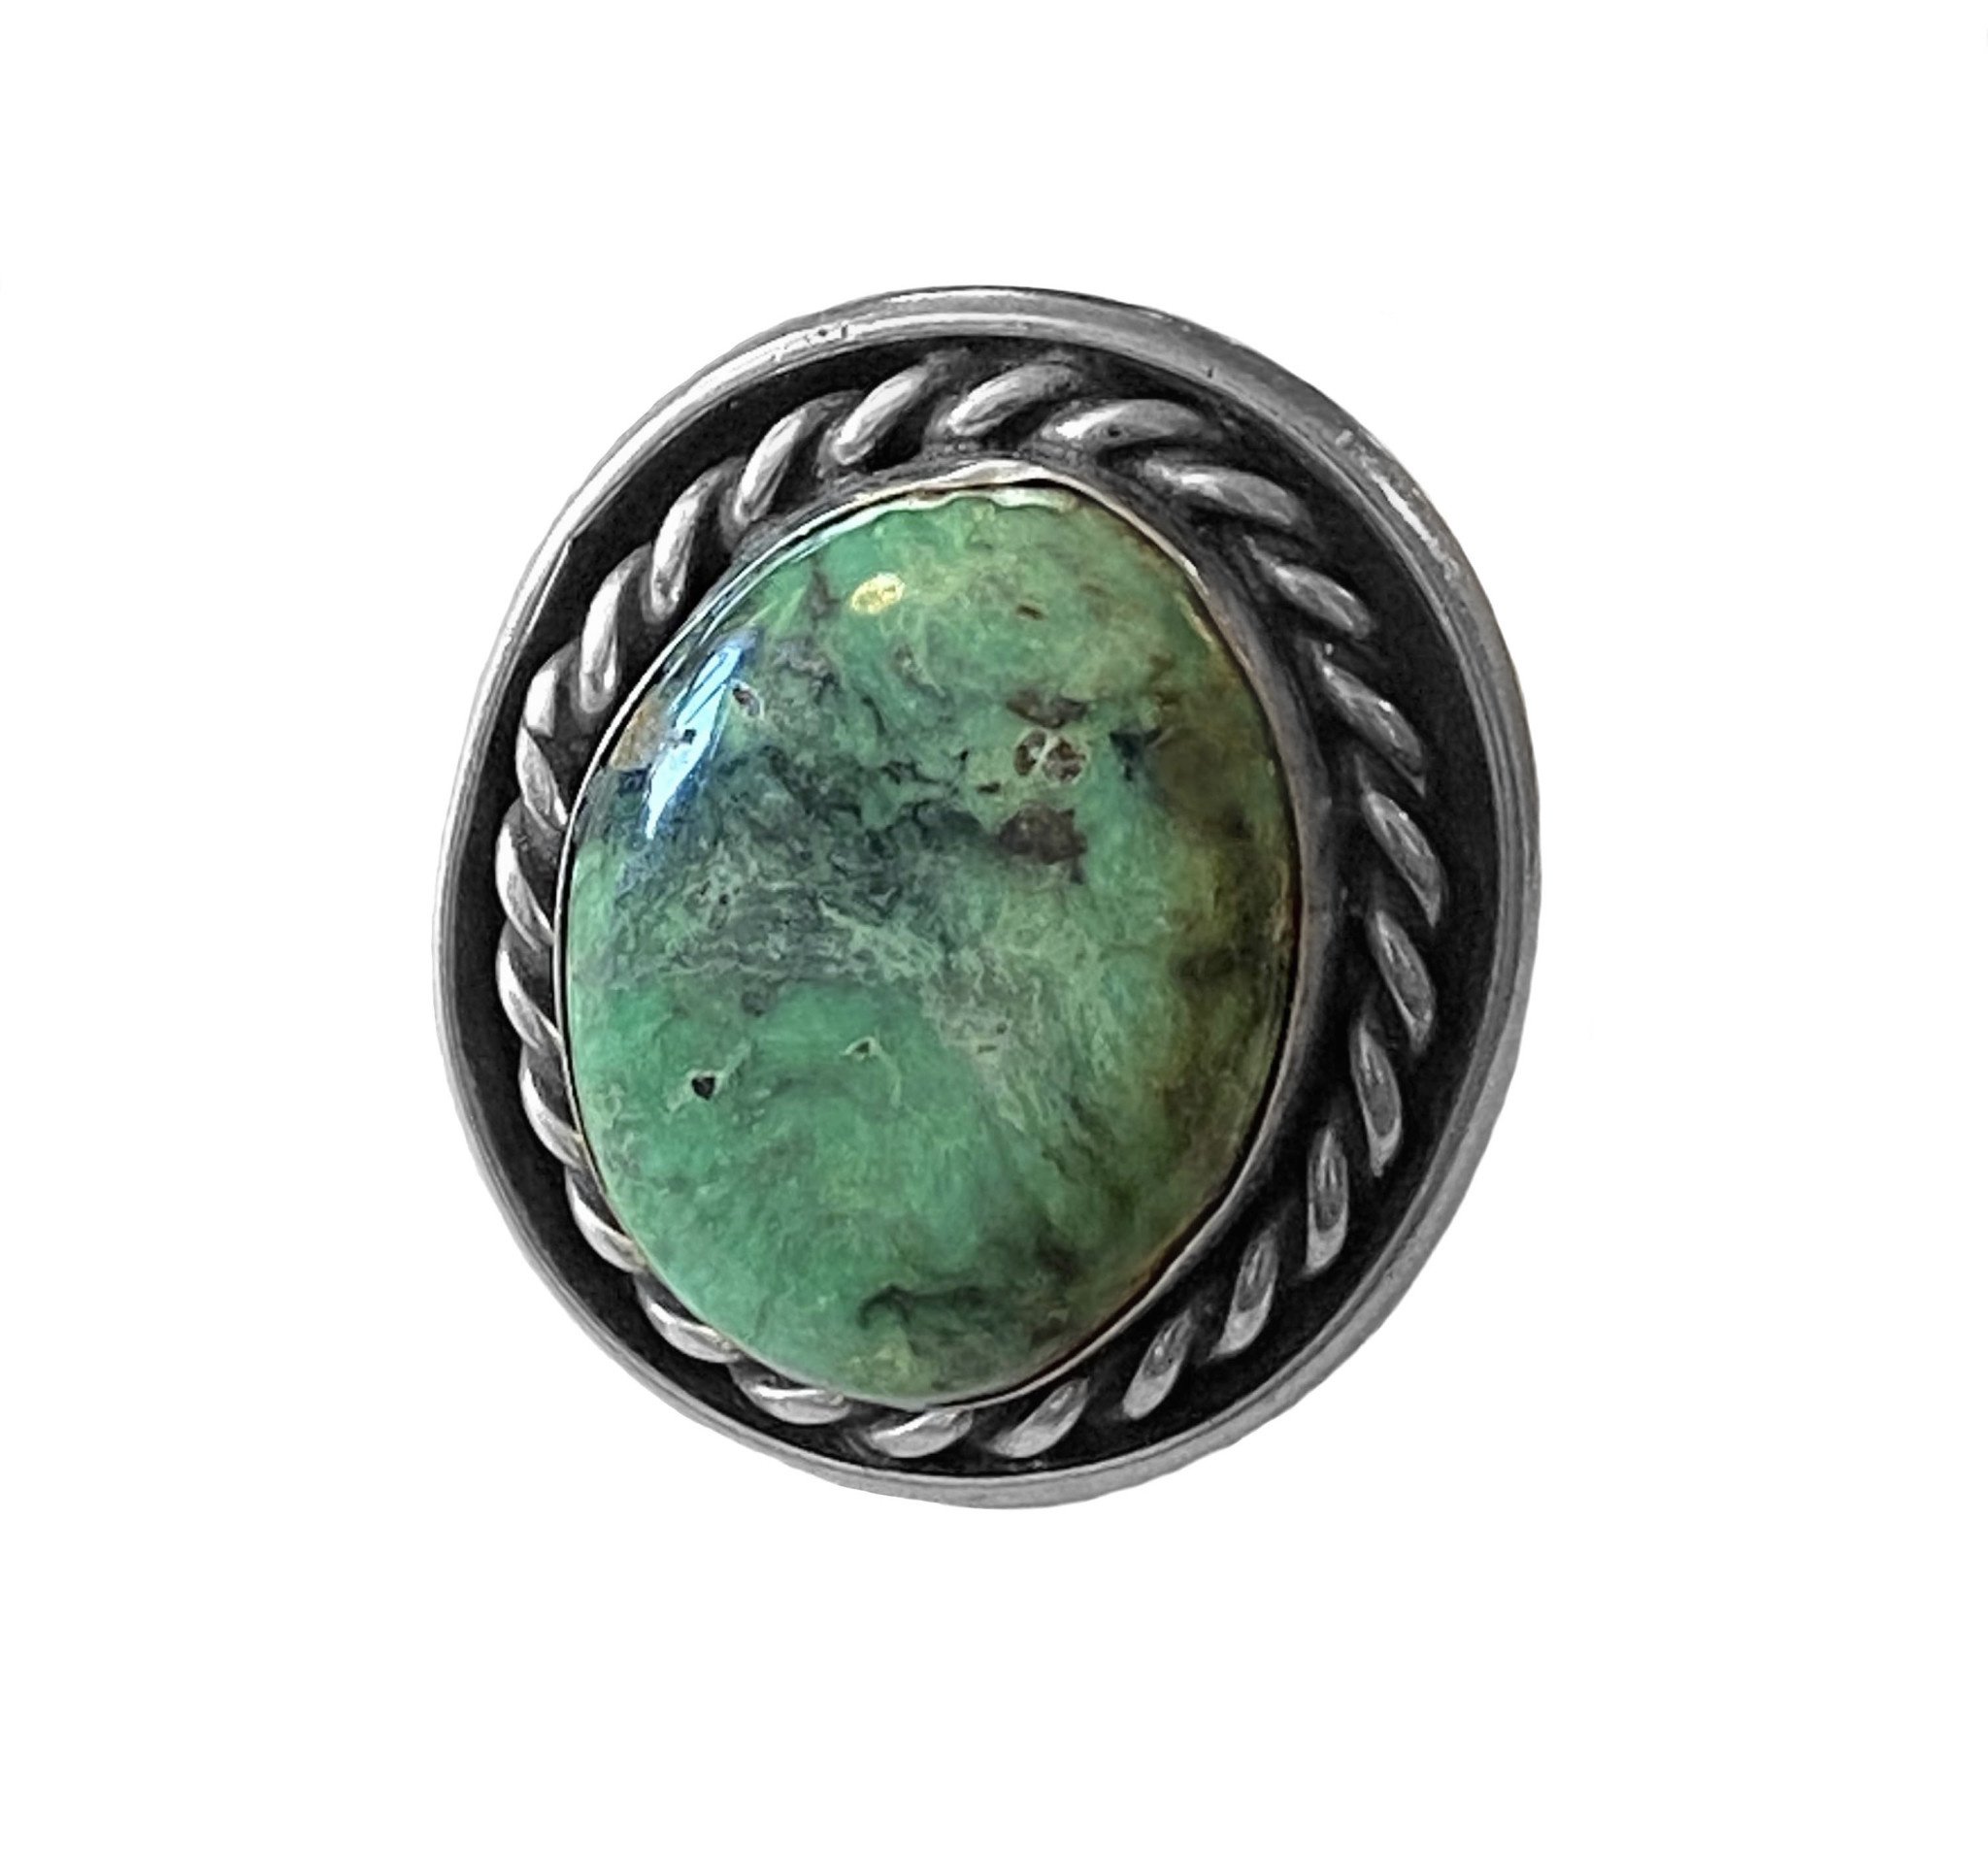 1970's Vintage Man's Denali Turquoise Ring